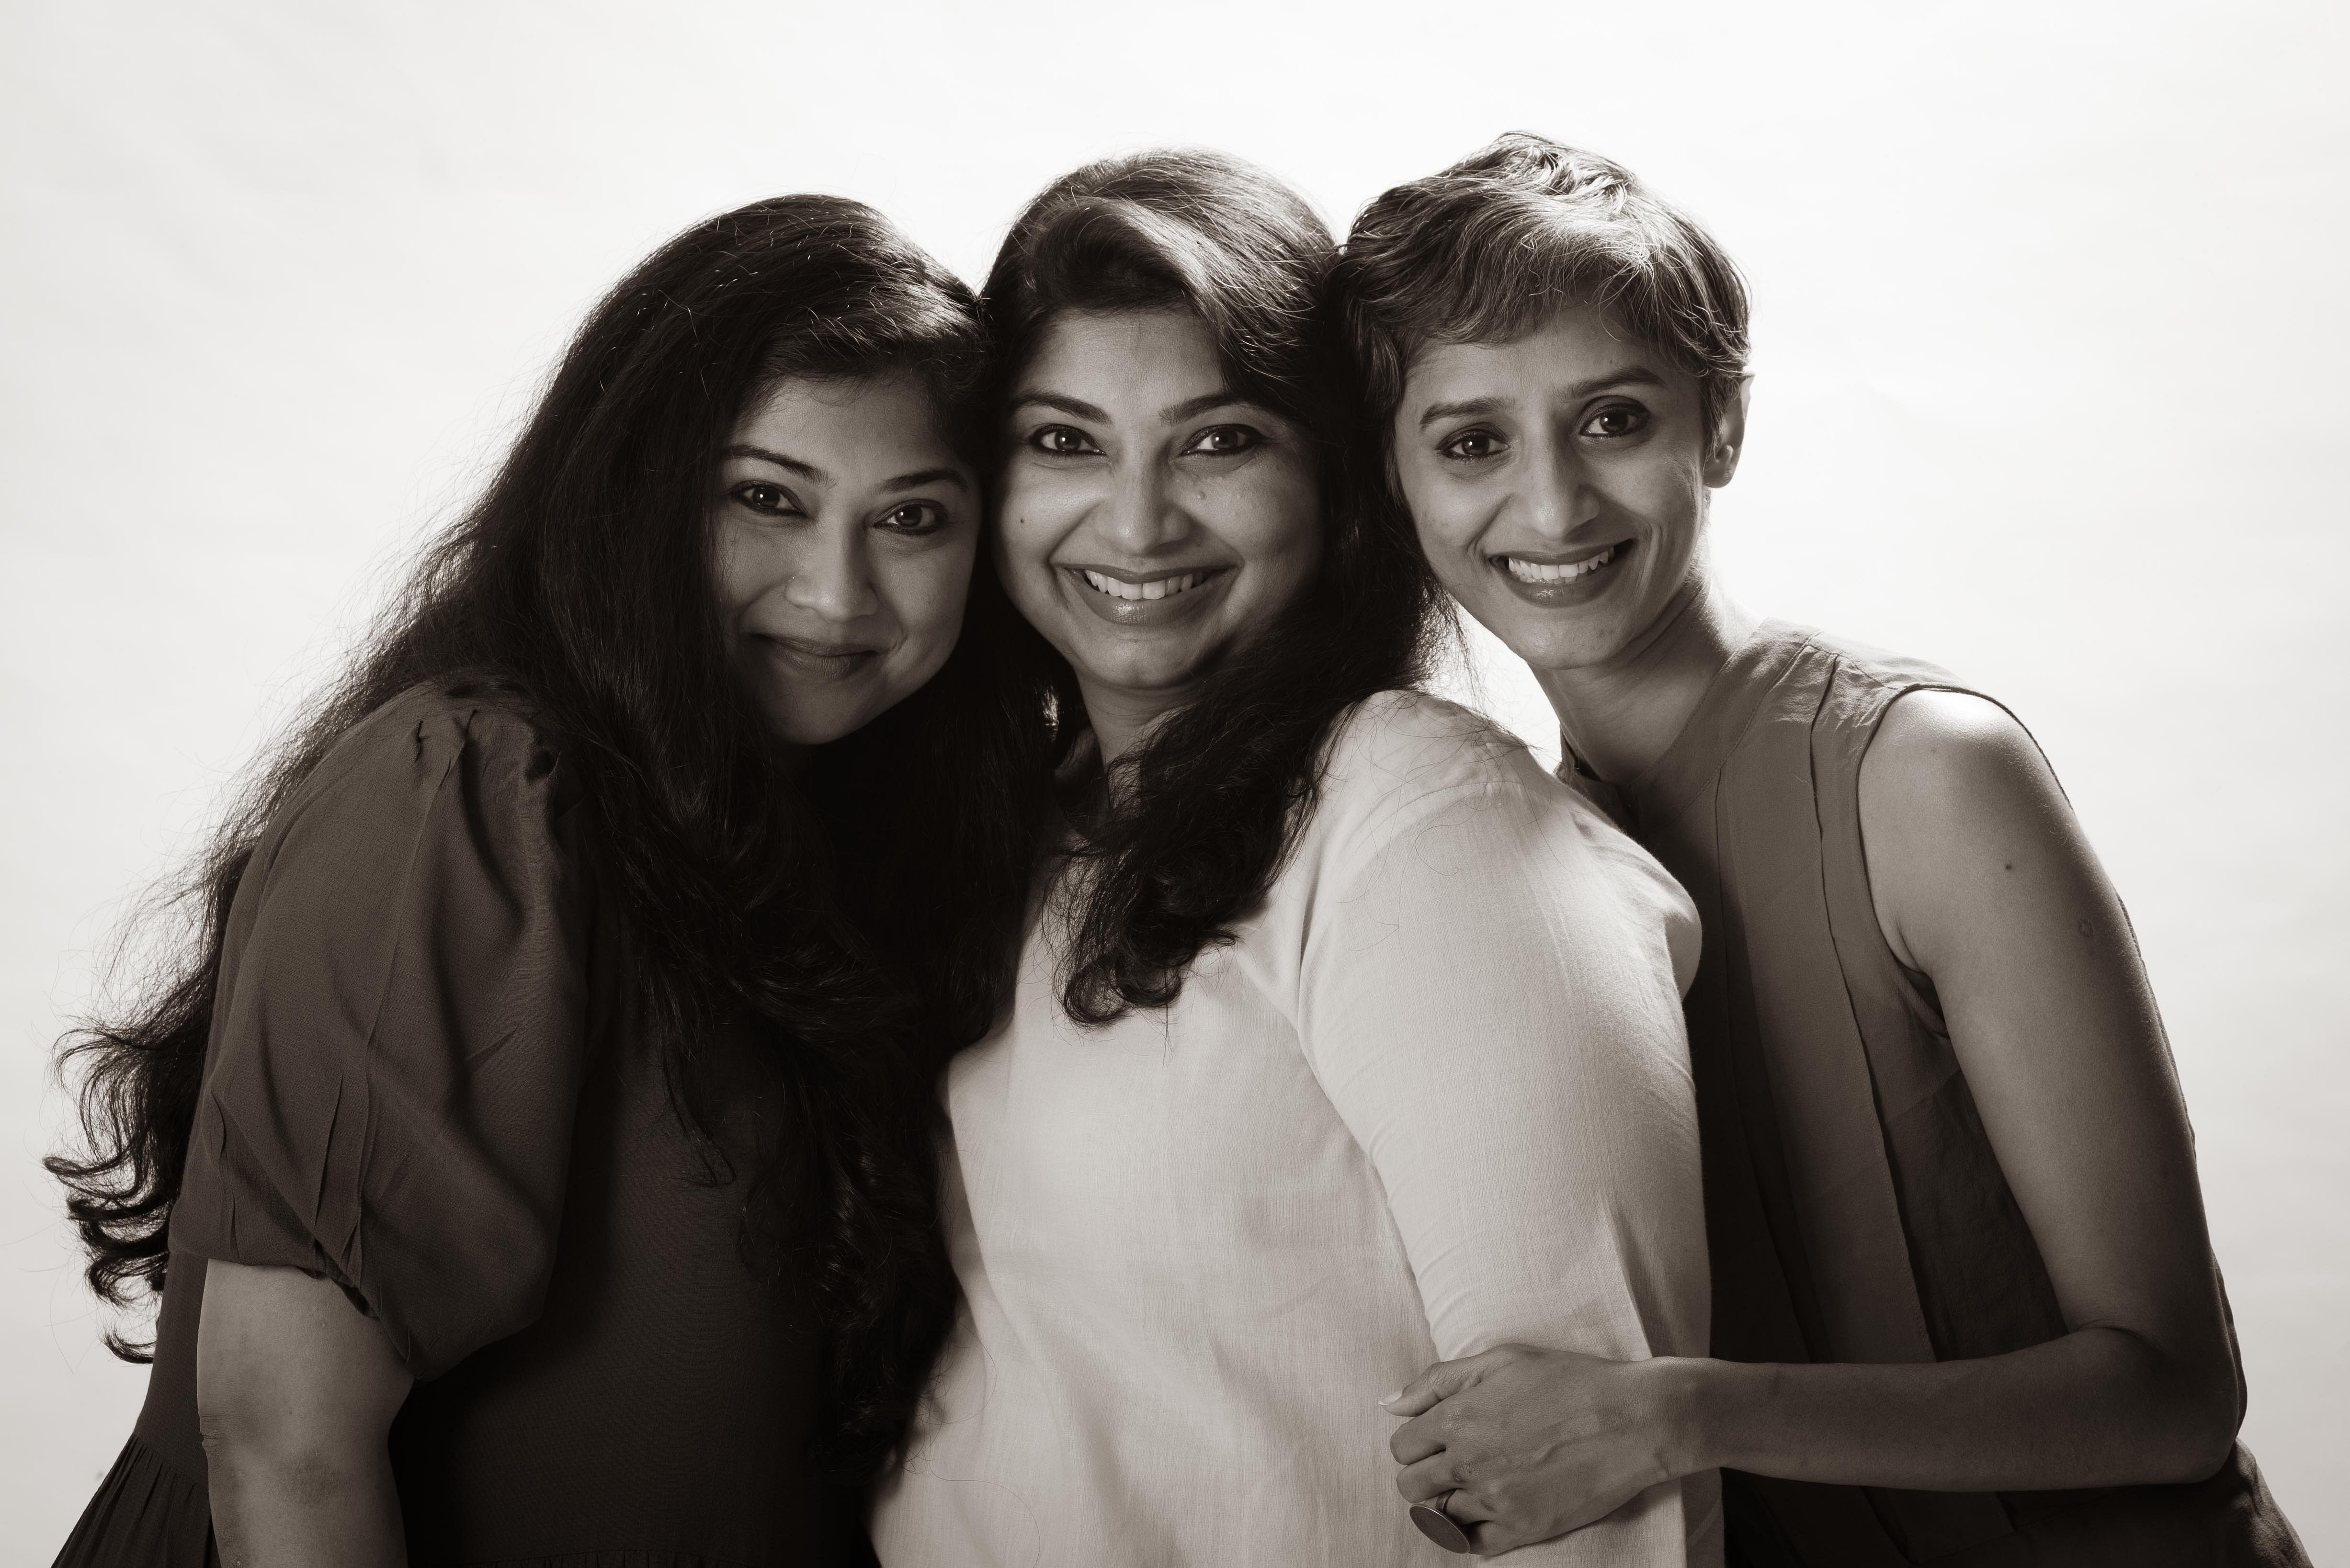 From left, Divya Raghuram (director), Raksha Sriram (creative director), Veena Basavarajaiah (choreographer)